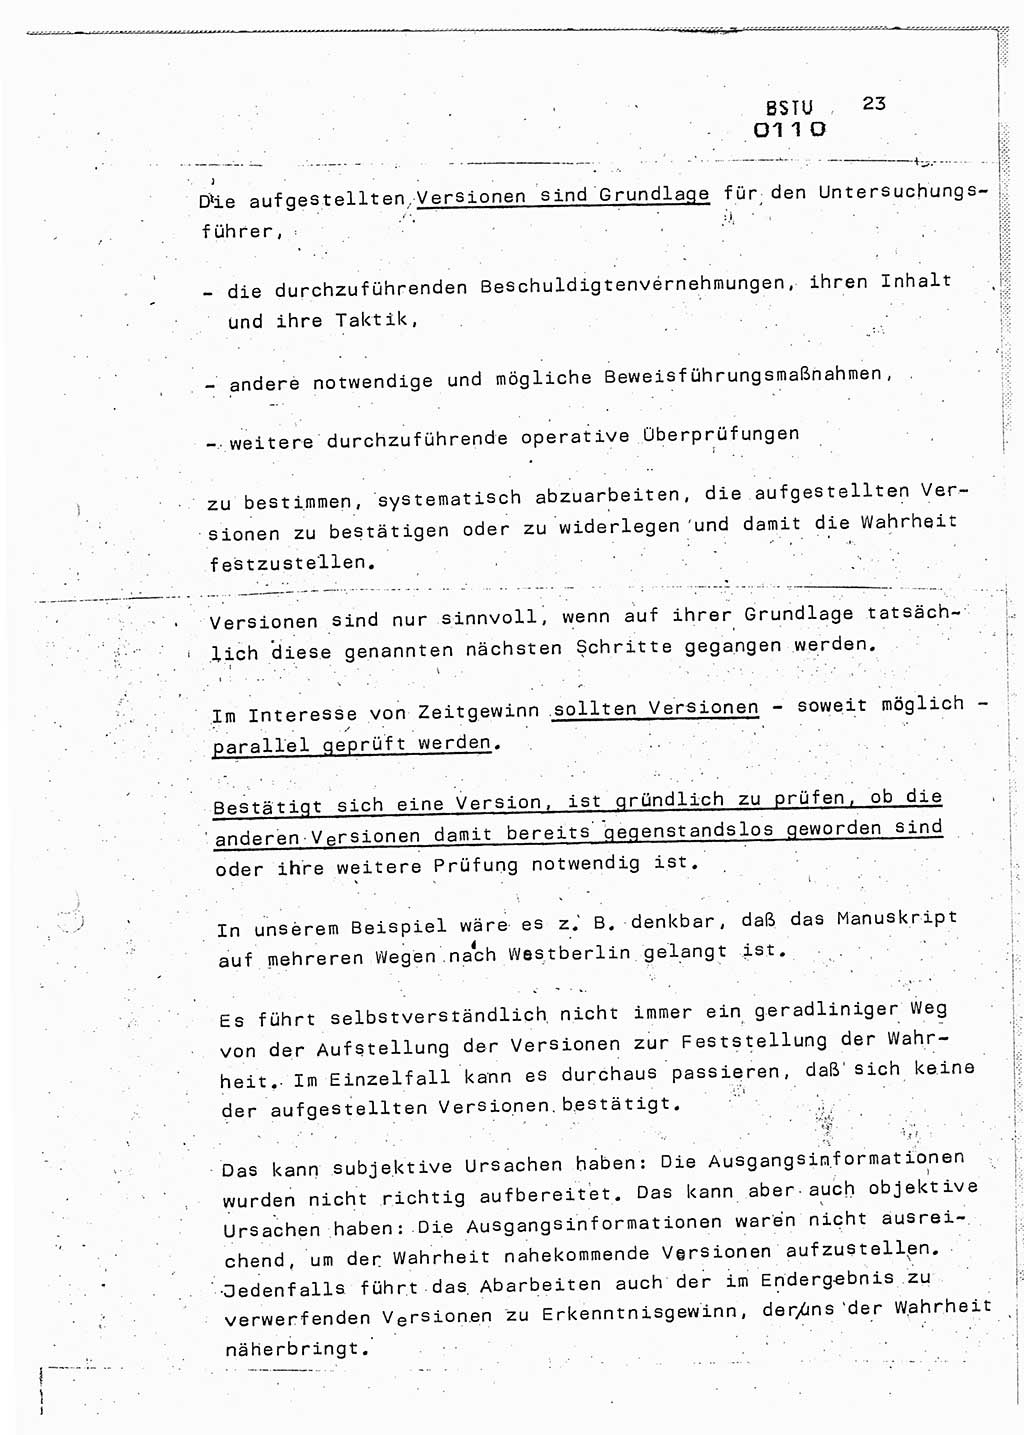 Lektion Ministerium für Staatssicherheit (MfS) [Deutsche Demokratische Republik (DDR)], Hauptabteilung (HA) Ⅸ, Berlin 1987, Seite 23 (Lekt. Pln. Bearb. EV MfS DDR HA Ⅸ /87 1987, S. 23)